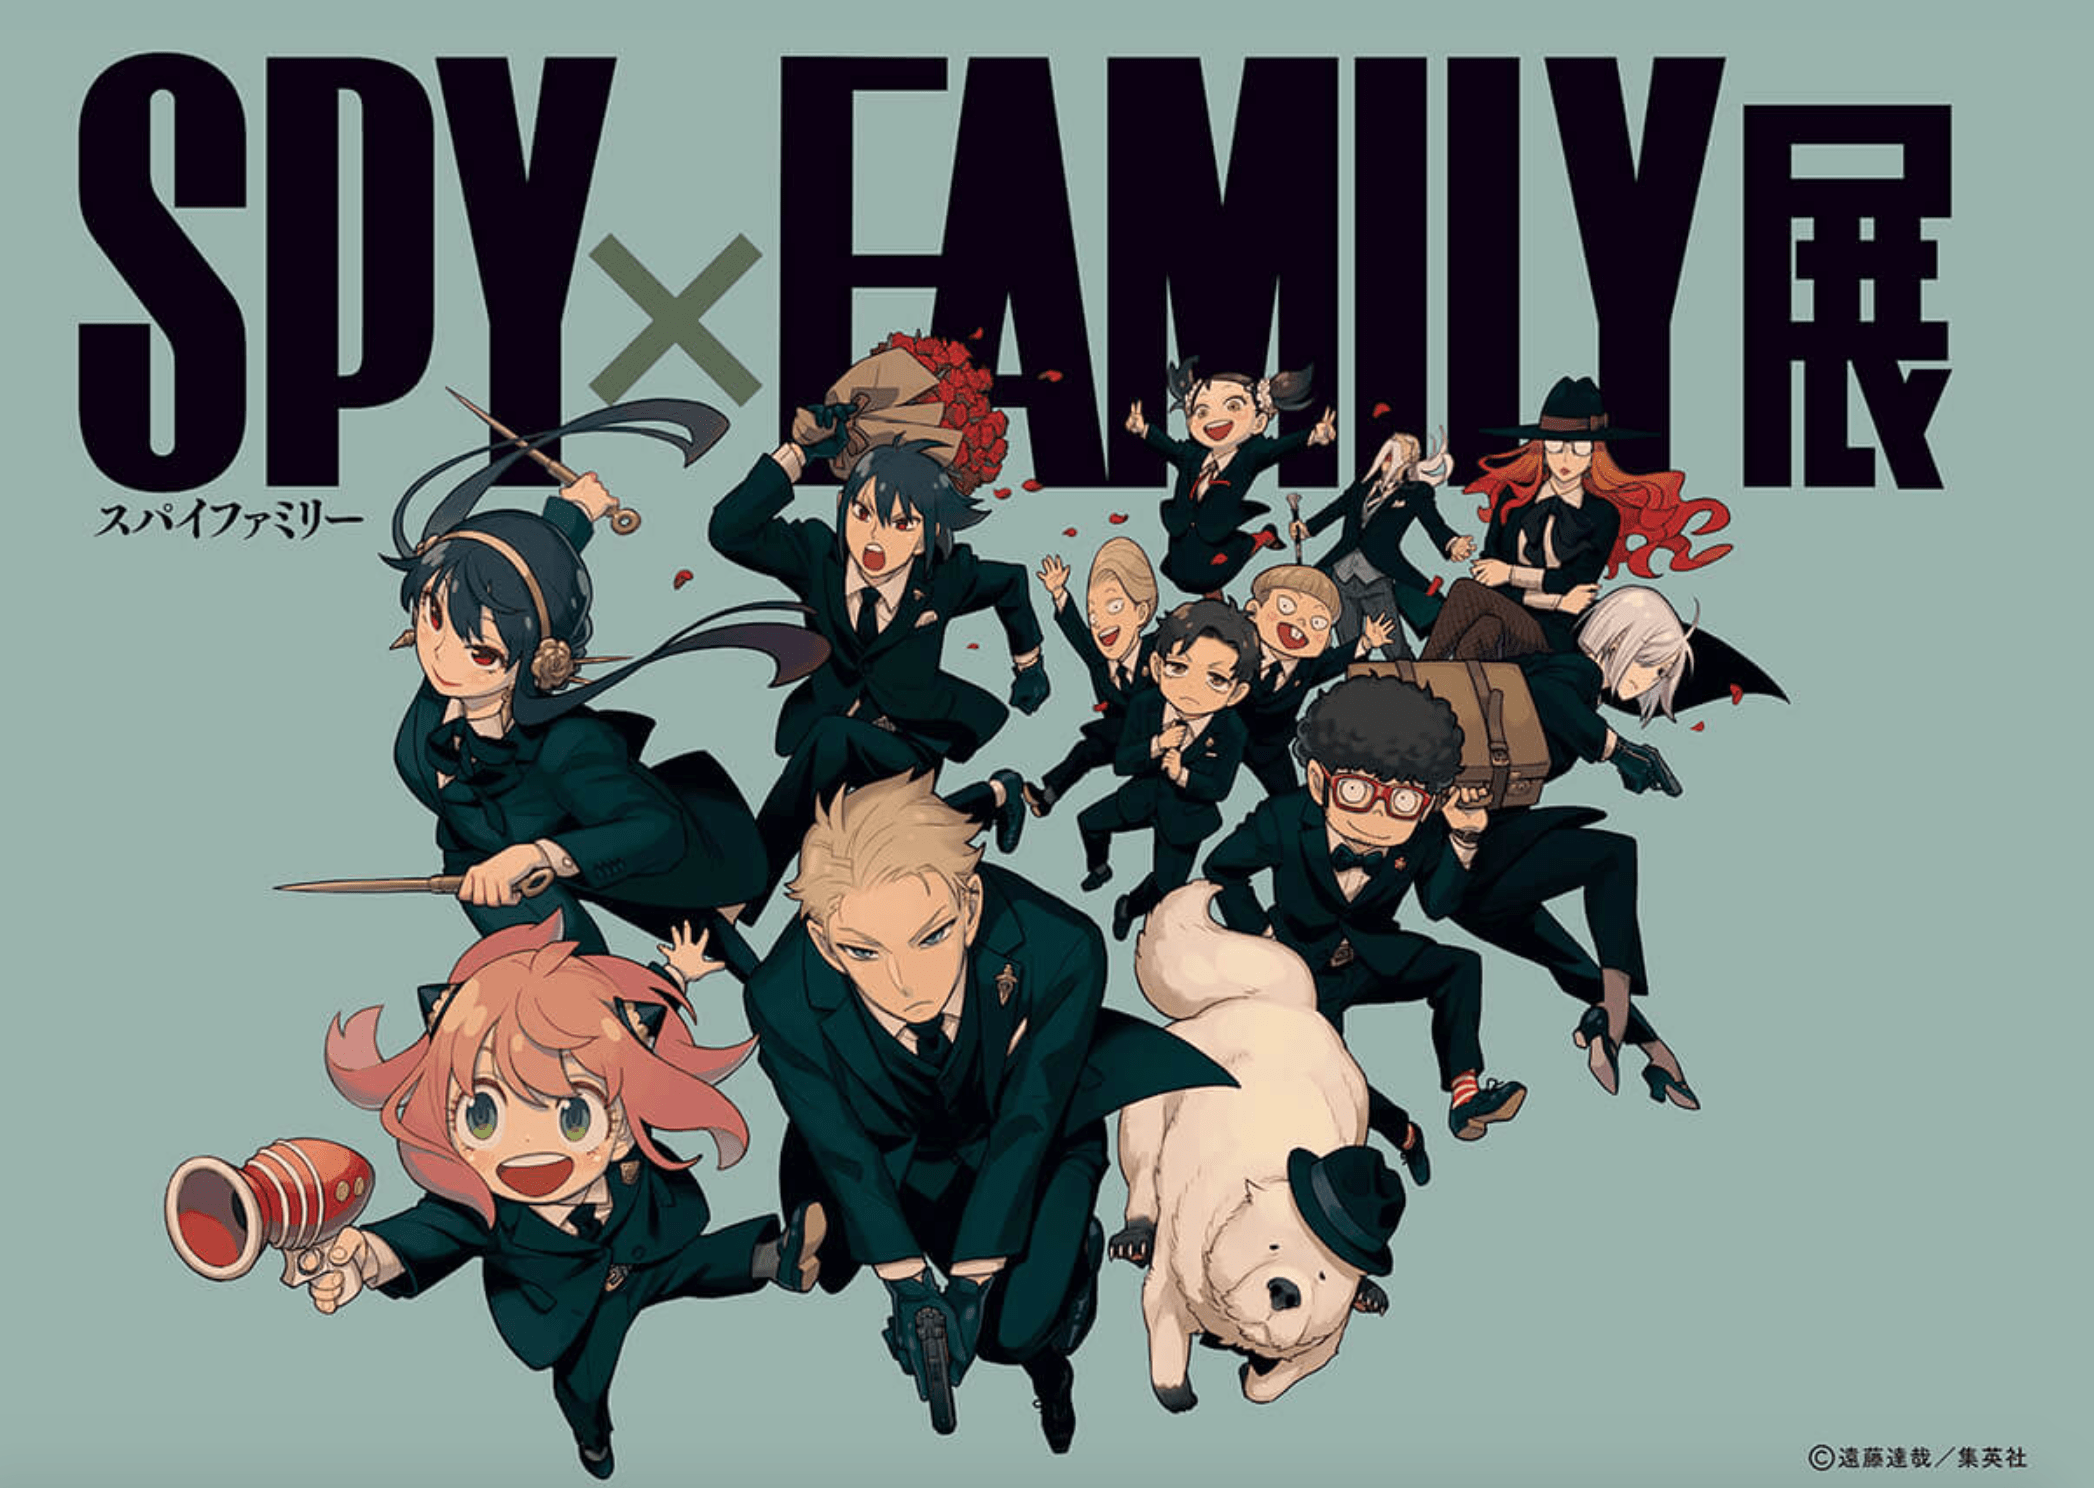 Spy x Family Exhibition